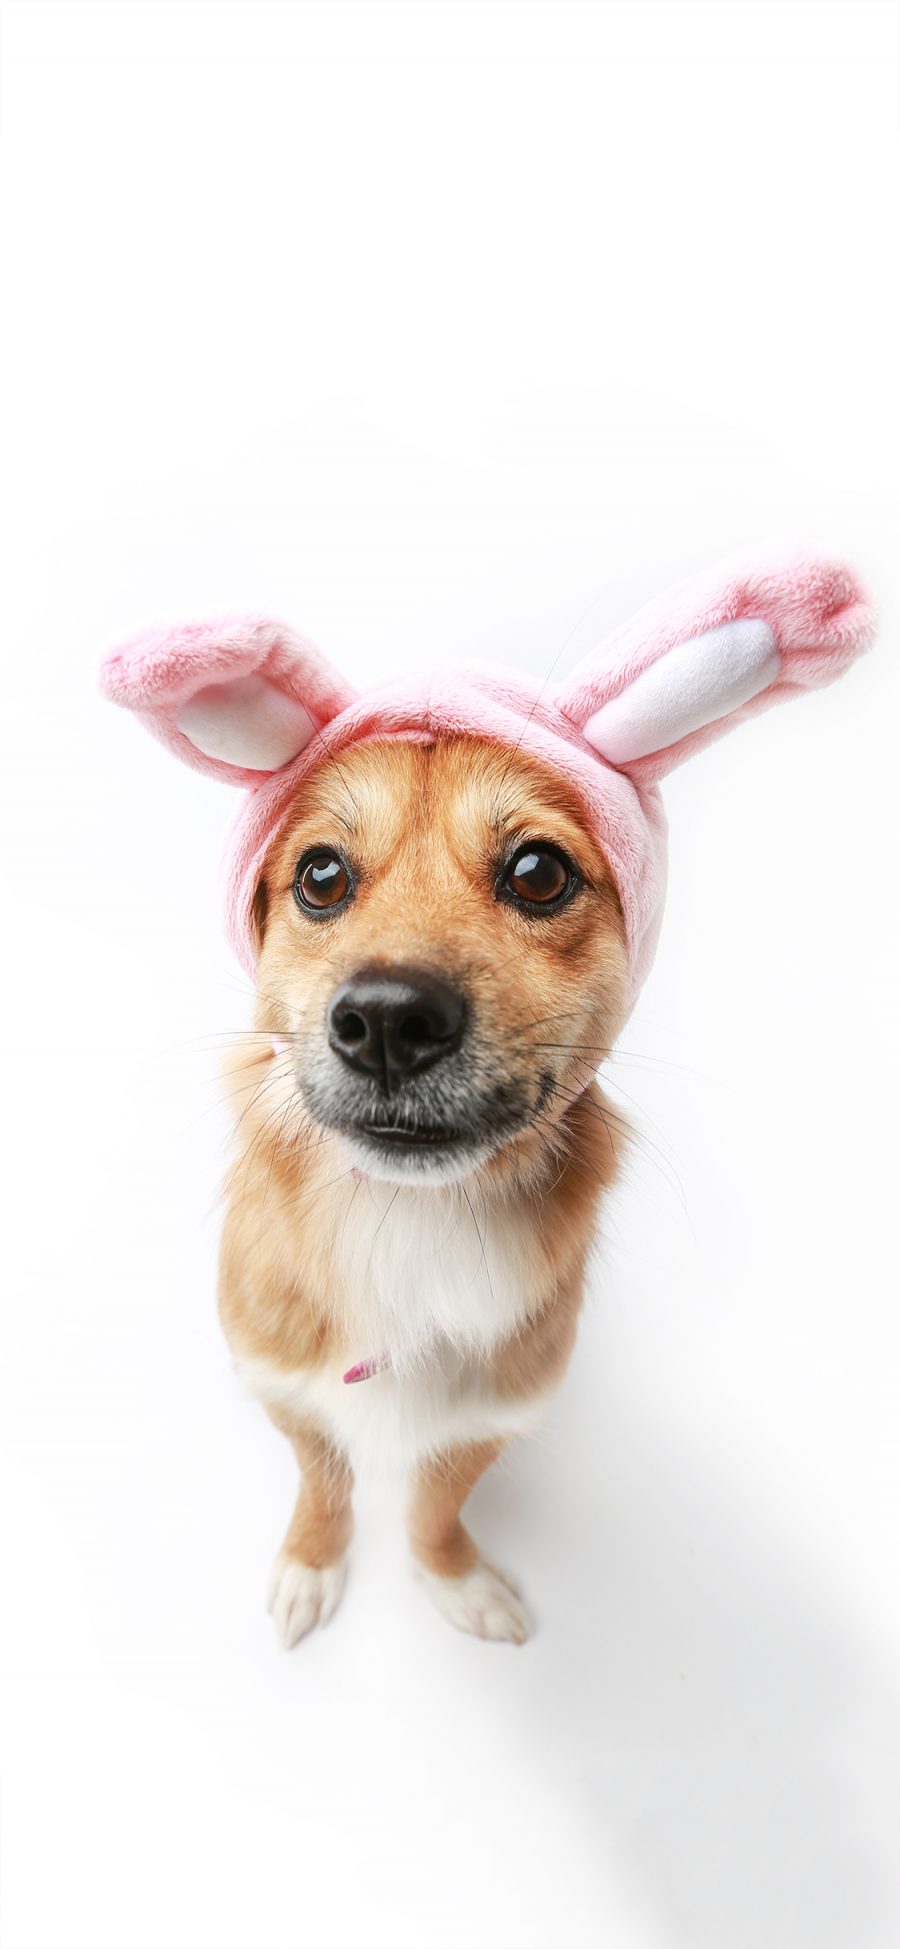 [2436×1125]宠物狗 兔耳朵 写真 呆萌 苹果手机壁纸图片